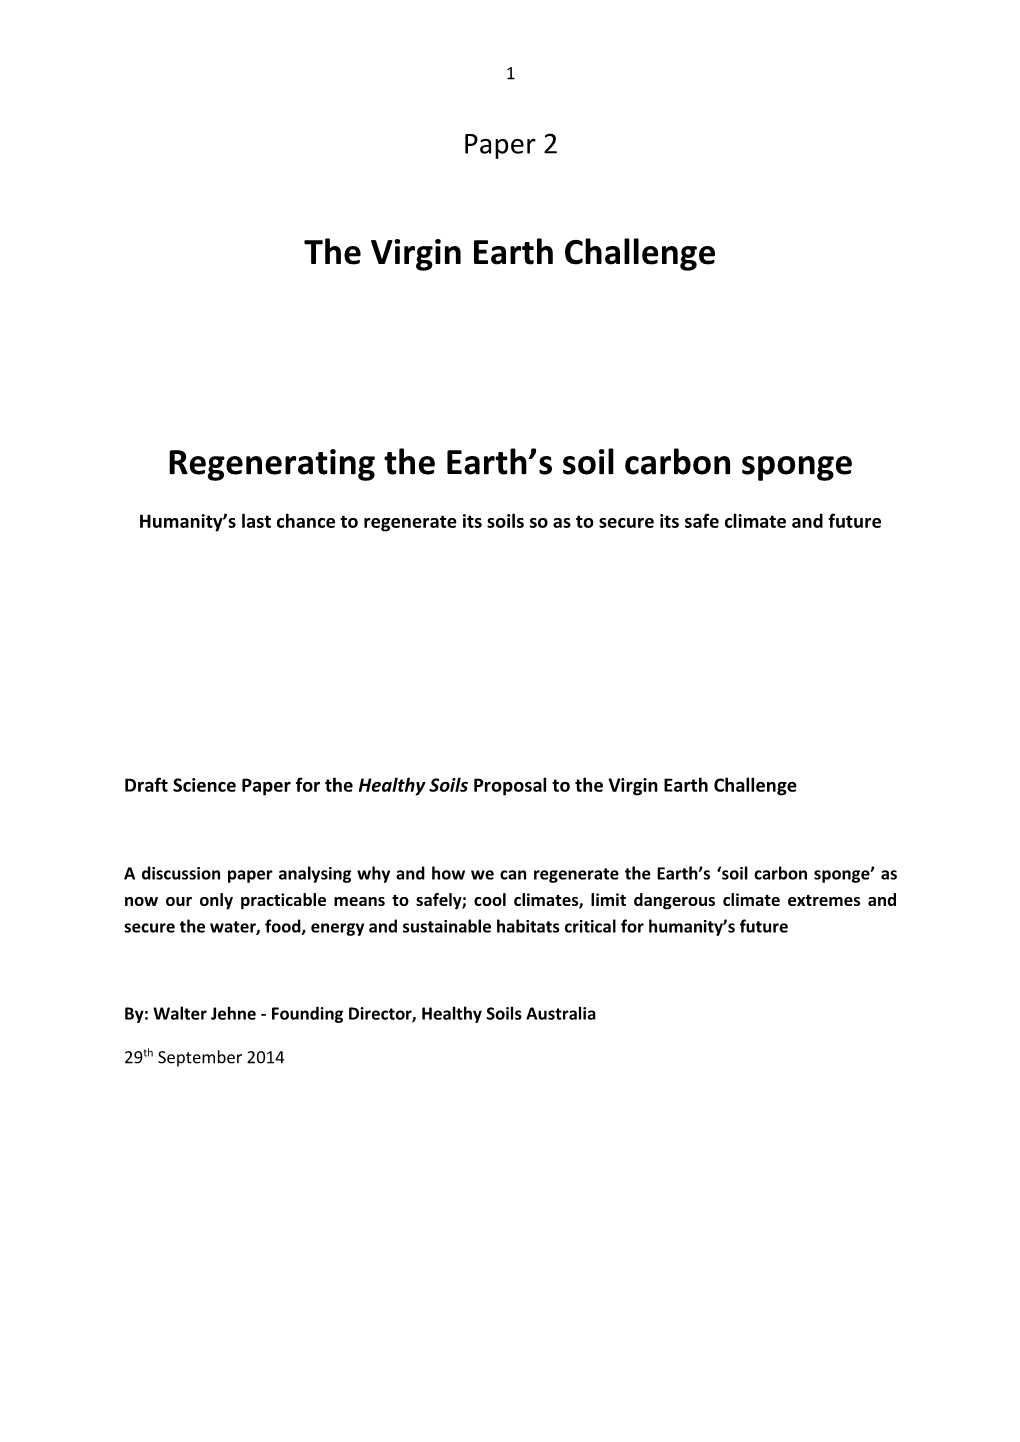 Regenerating the Earth's Soil Carbon Sponge